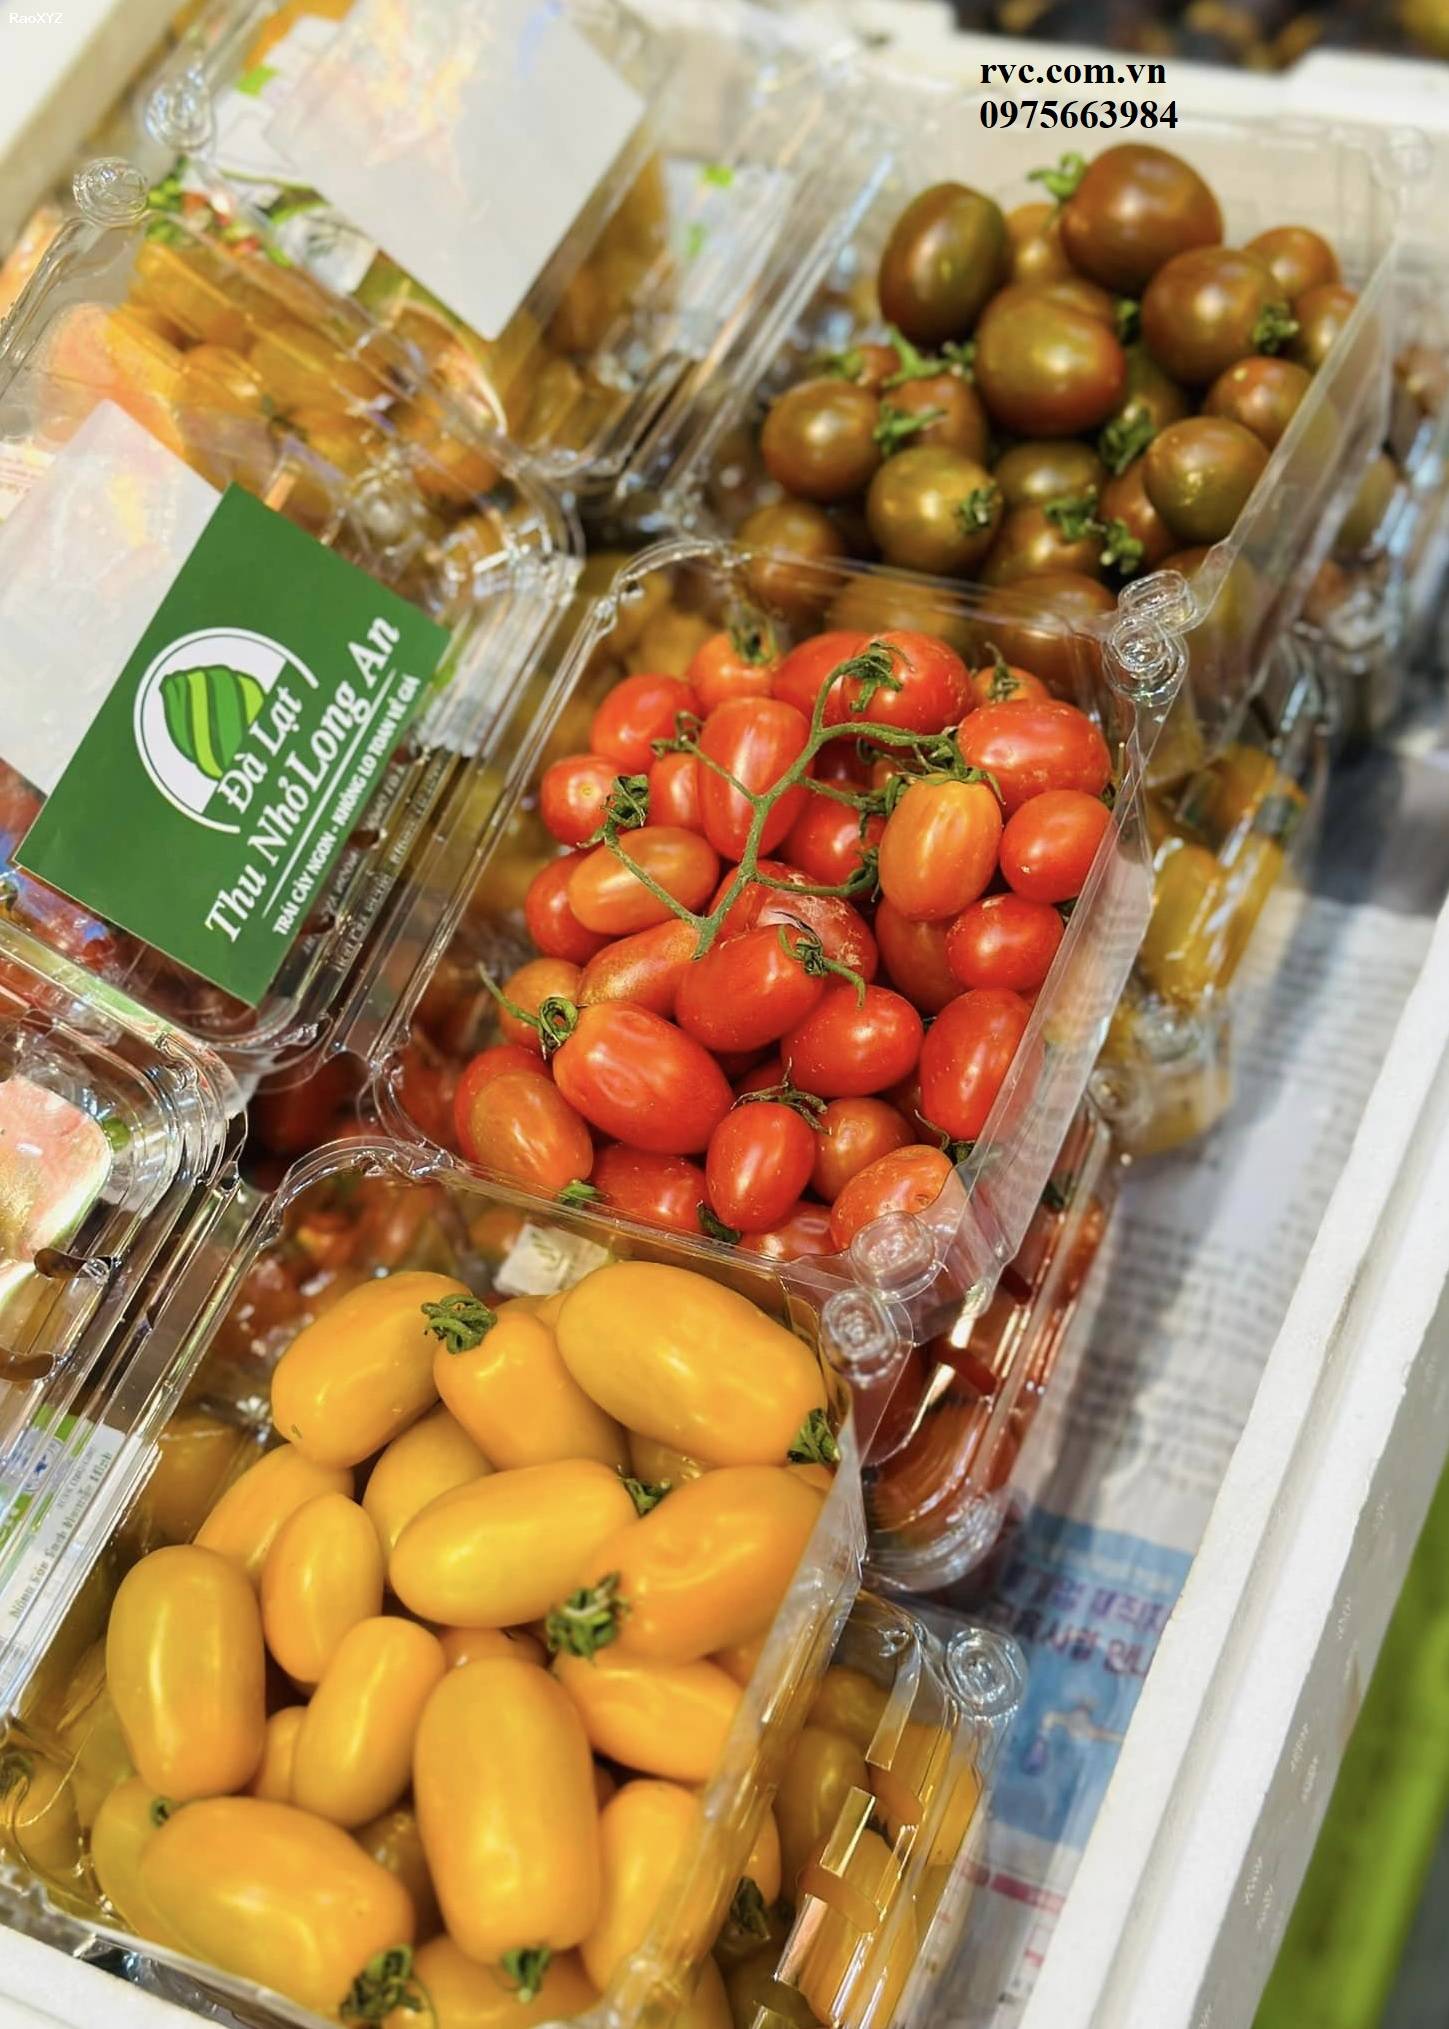 Điểm phân phối hộp nhựa trái cây 500g chất lượng tại Đà Lạt.